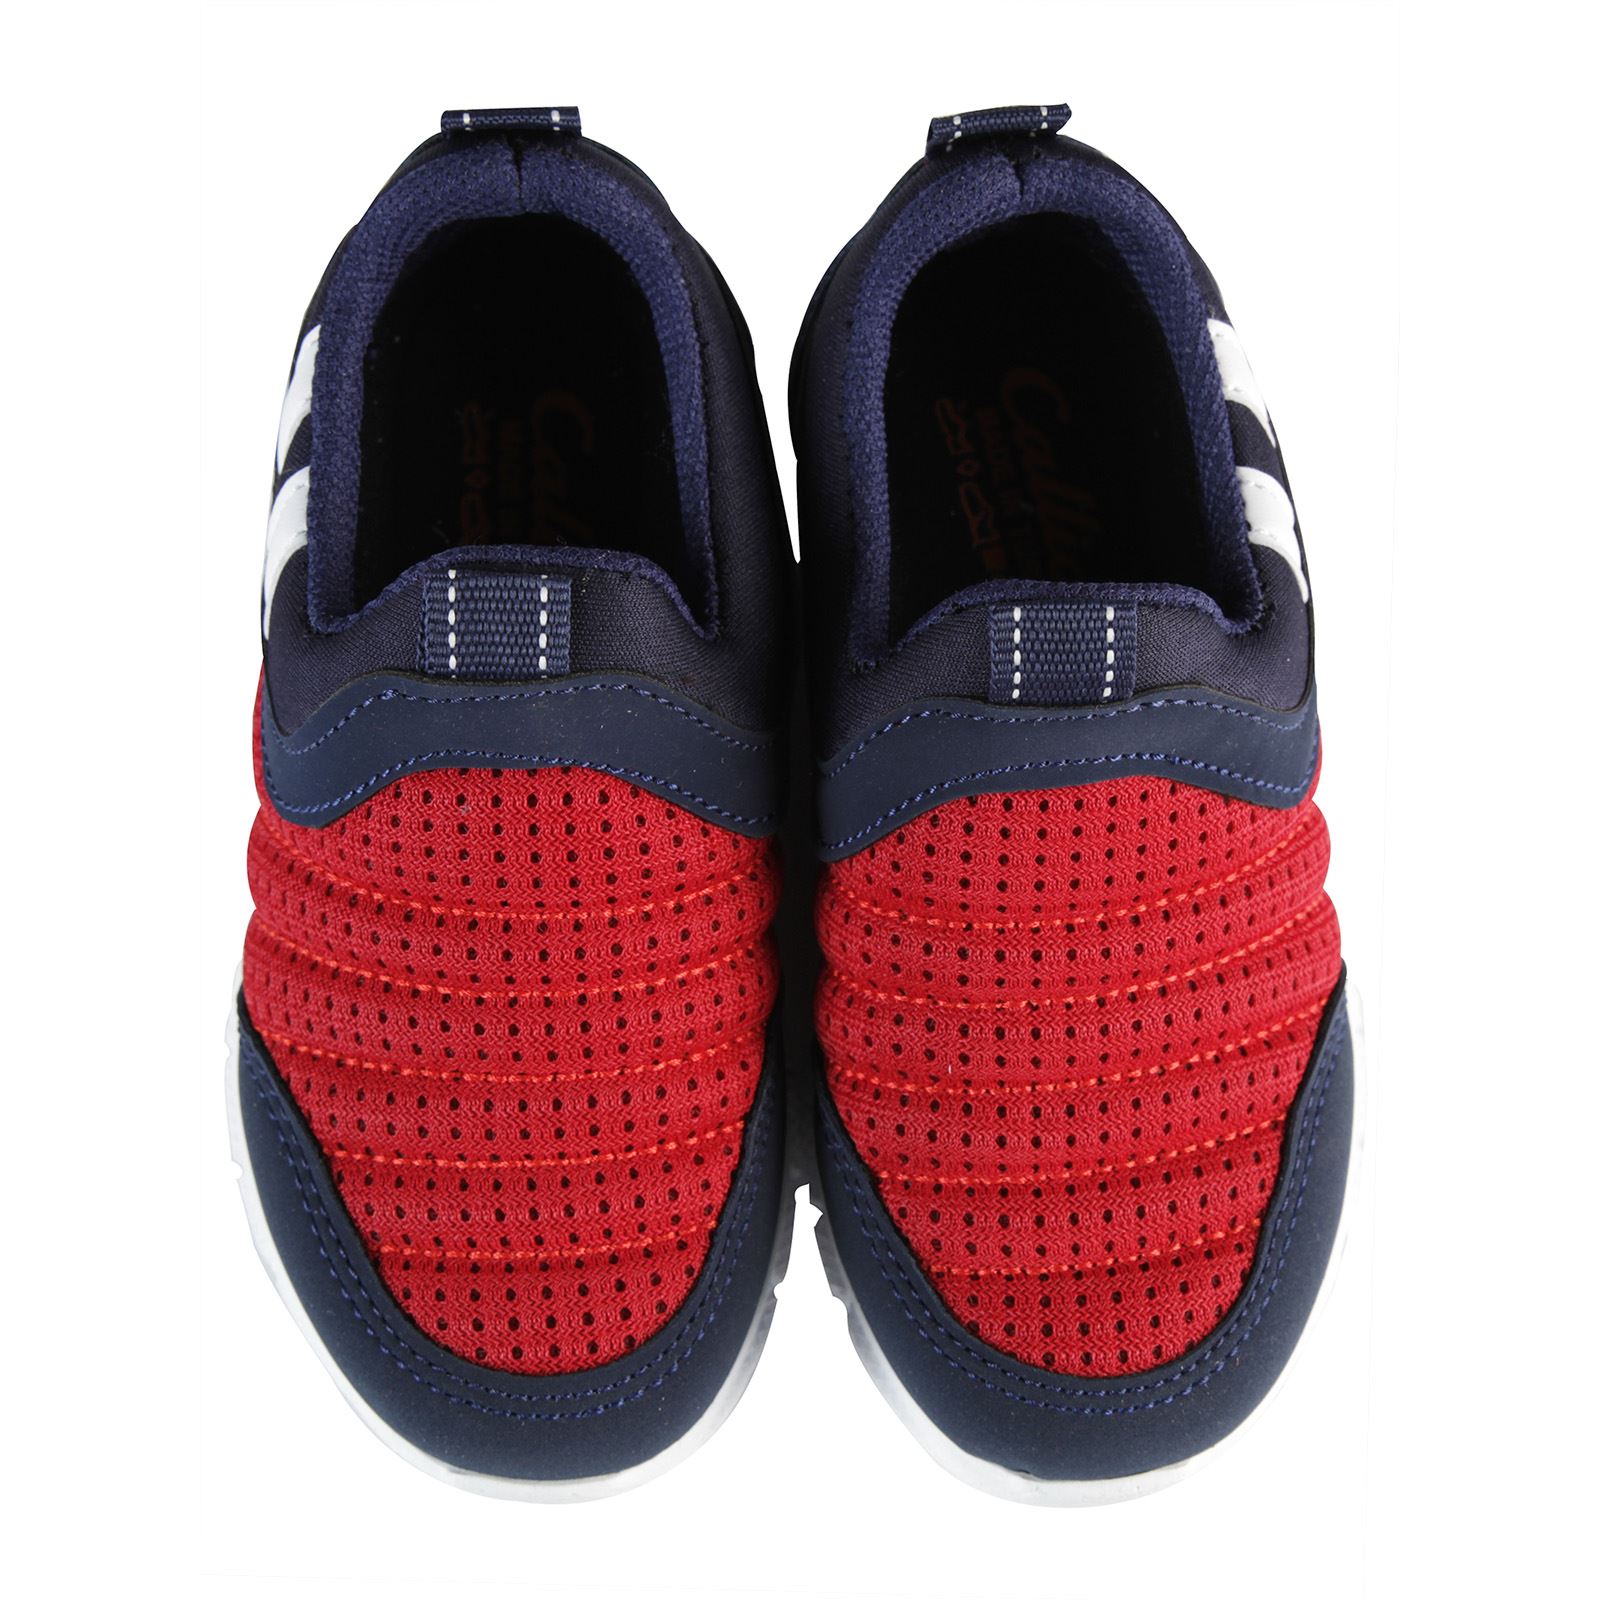 Callion Erkek Çocuk Spor Ayakkabı 26-30 Numara Kırmızı